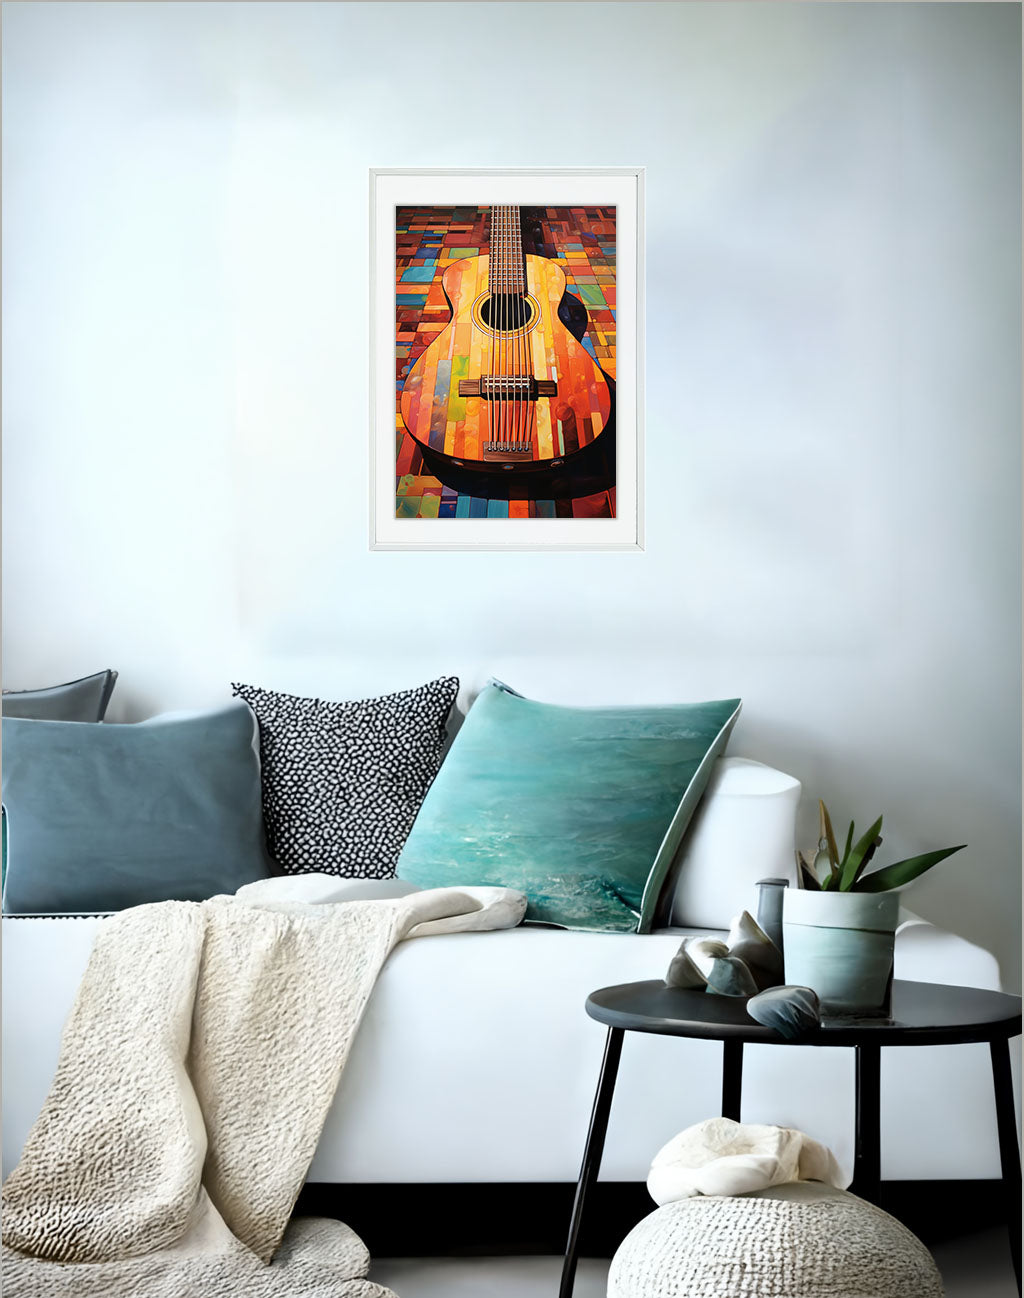 ギターのアートポスター:guitar_f37a / 音楽・芸術__のポスター画像ソファ近くに設置したイメージ